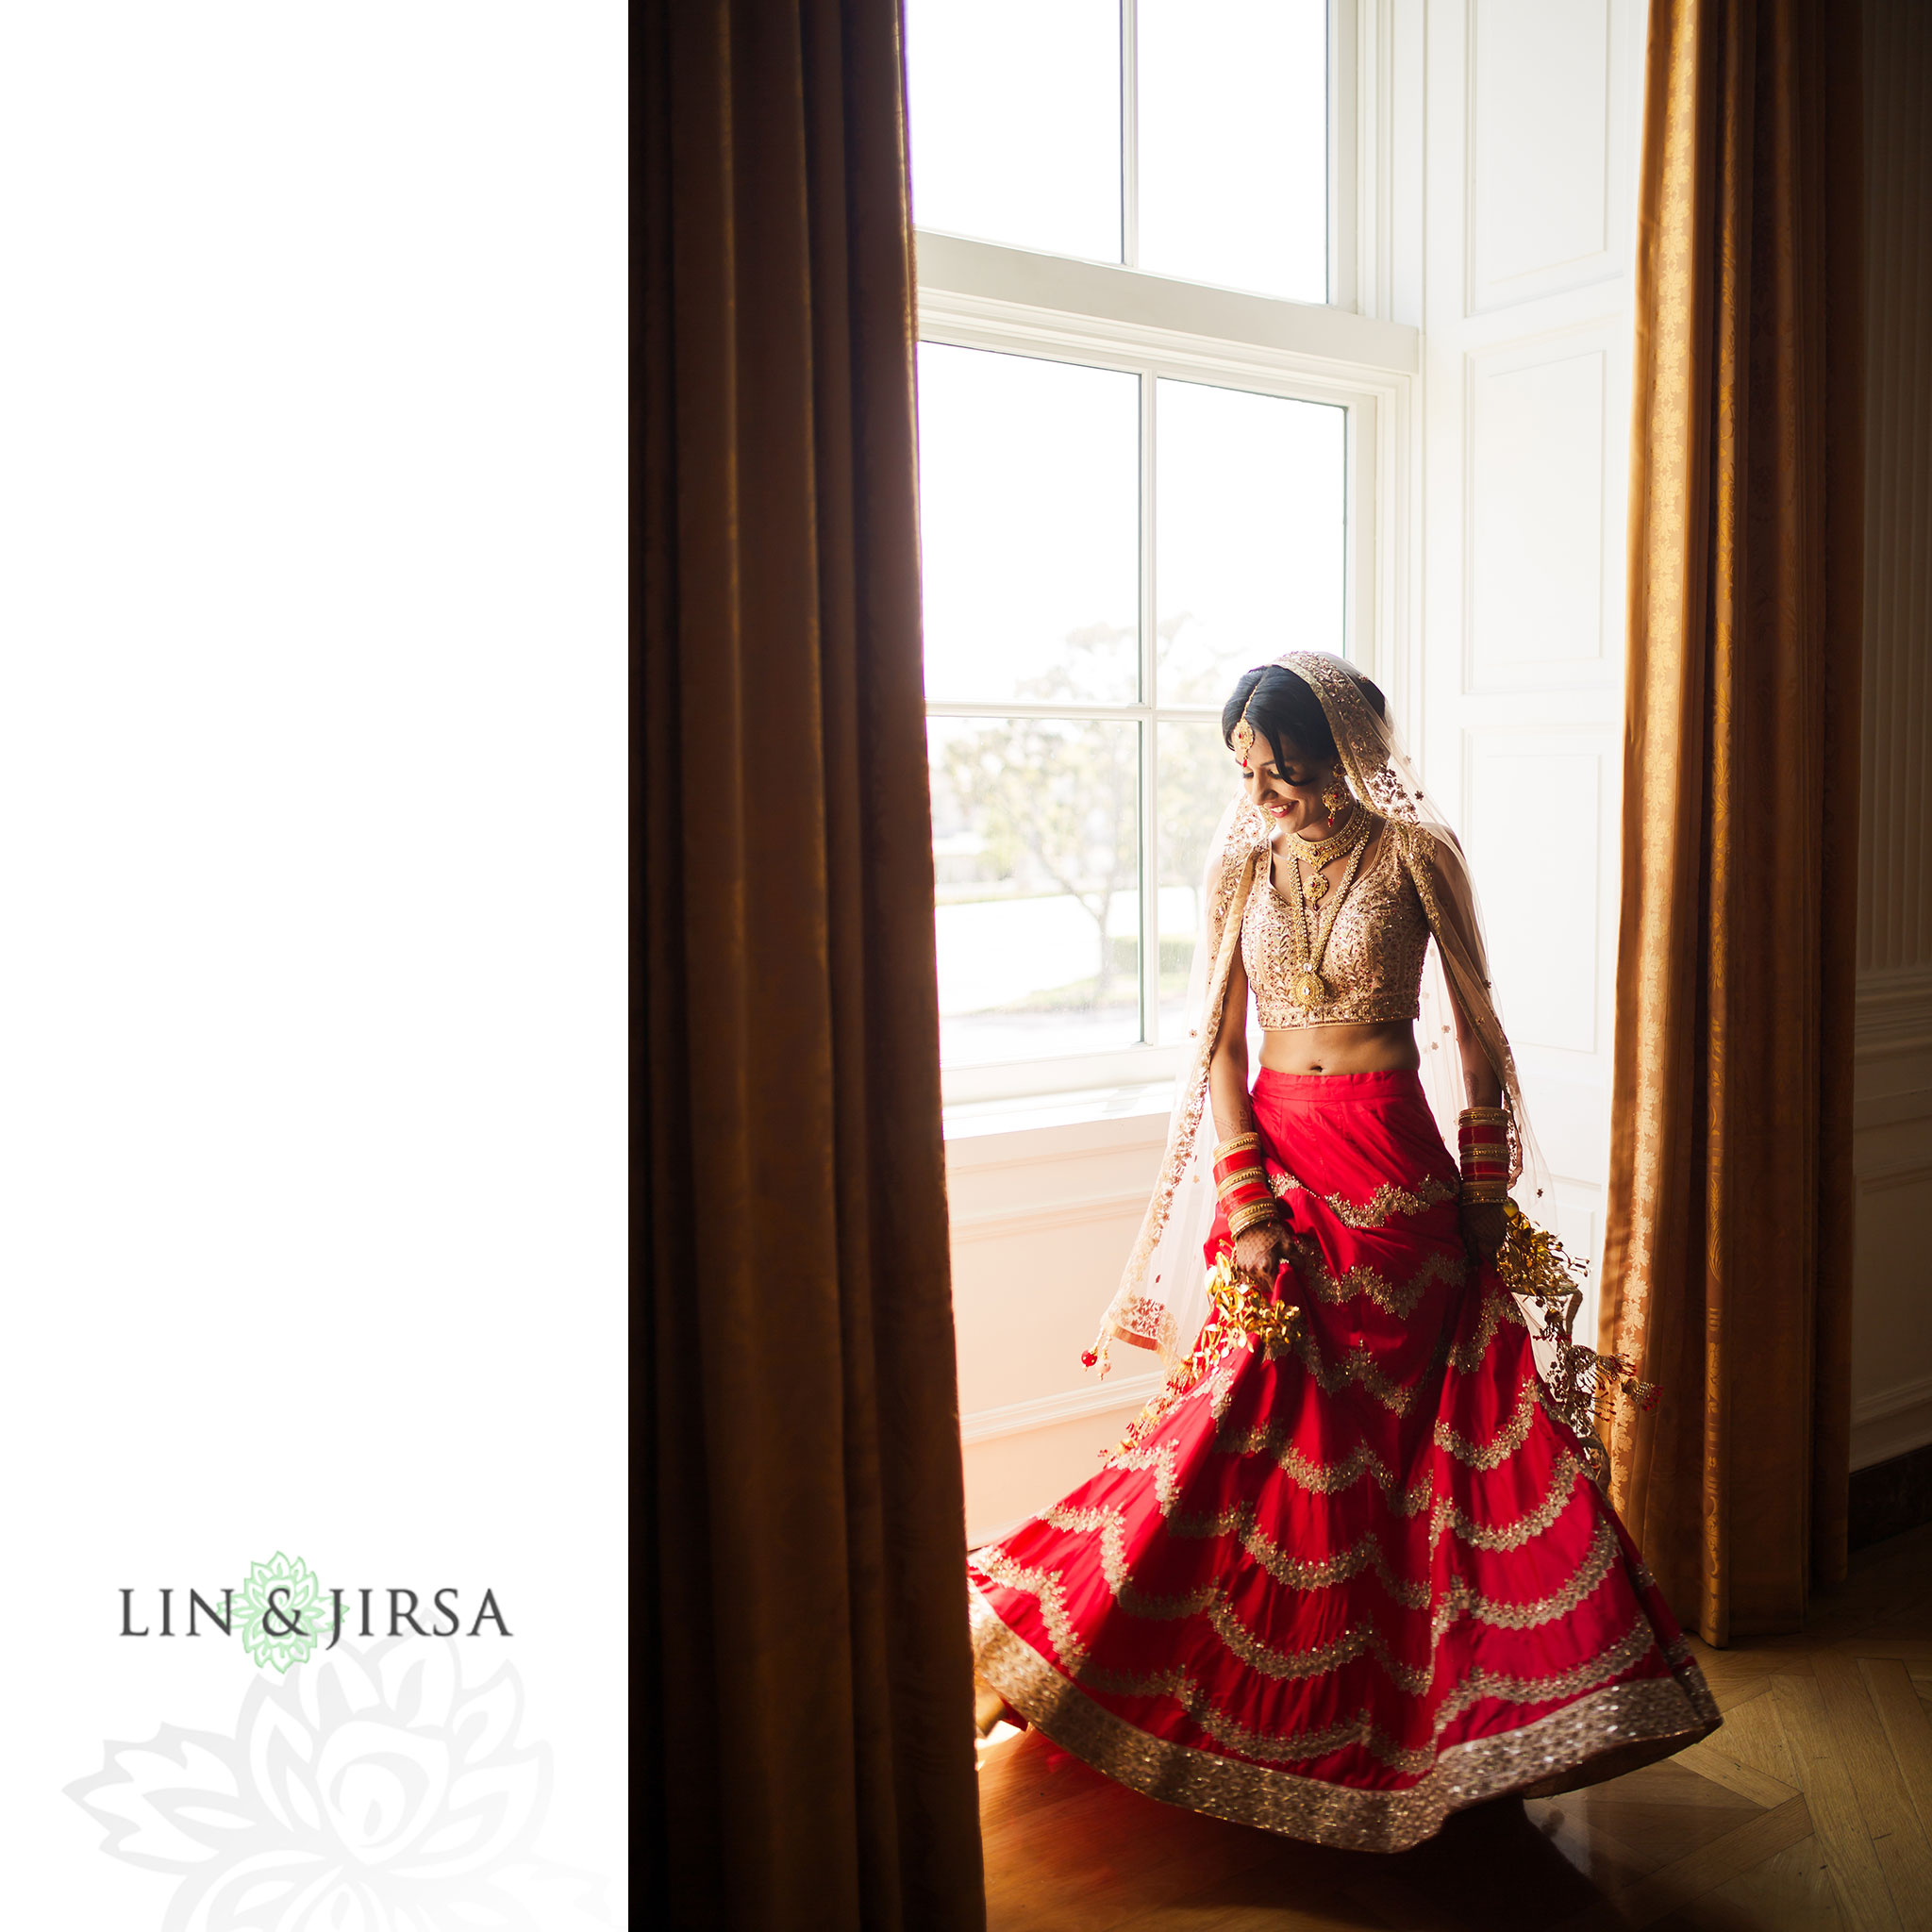 05 richard nixon library yorba linda indian wedding photography